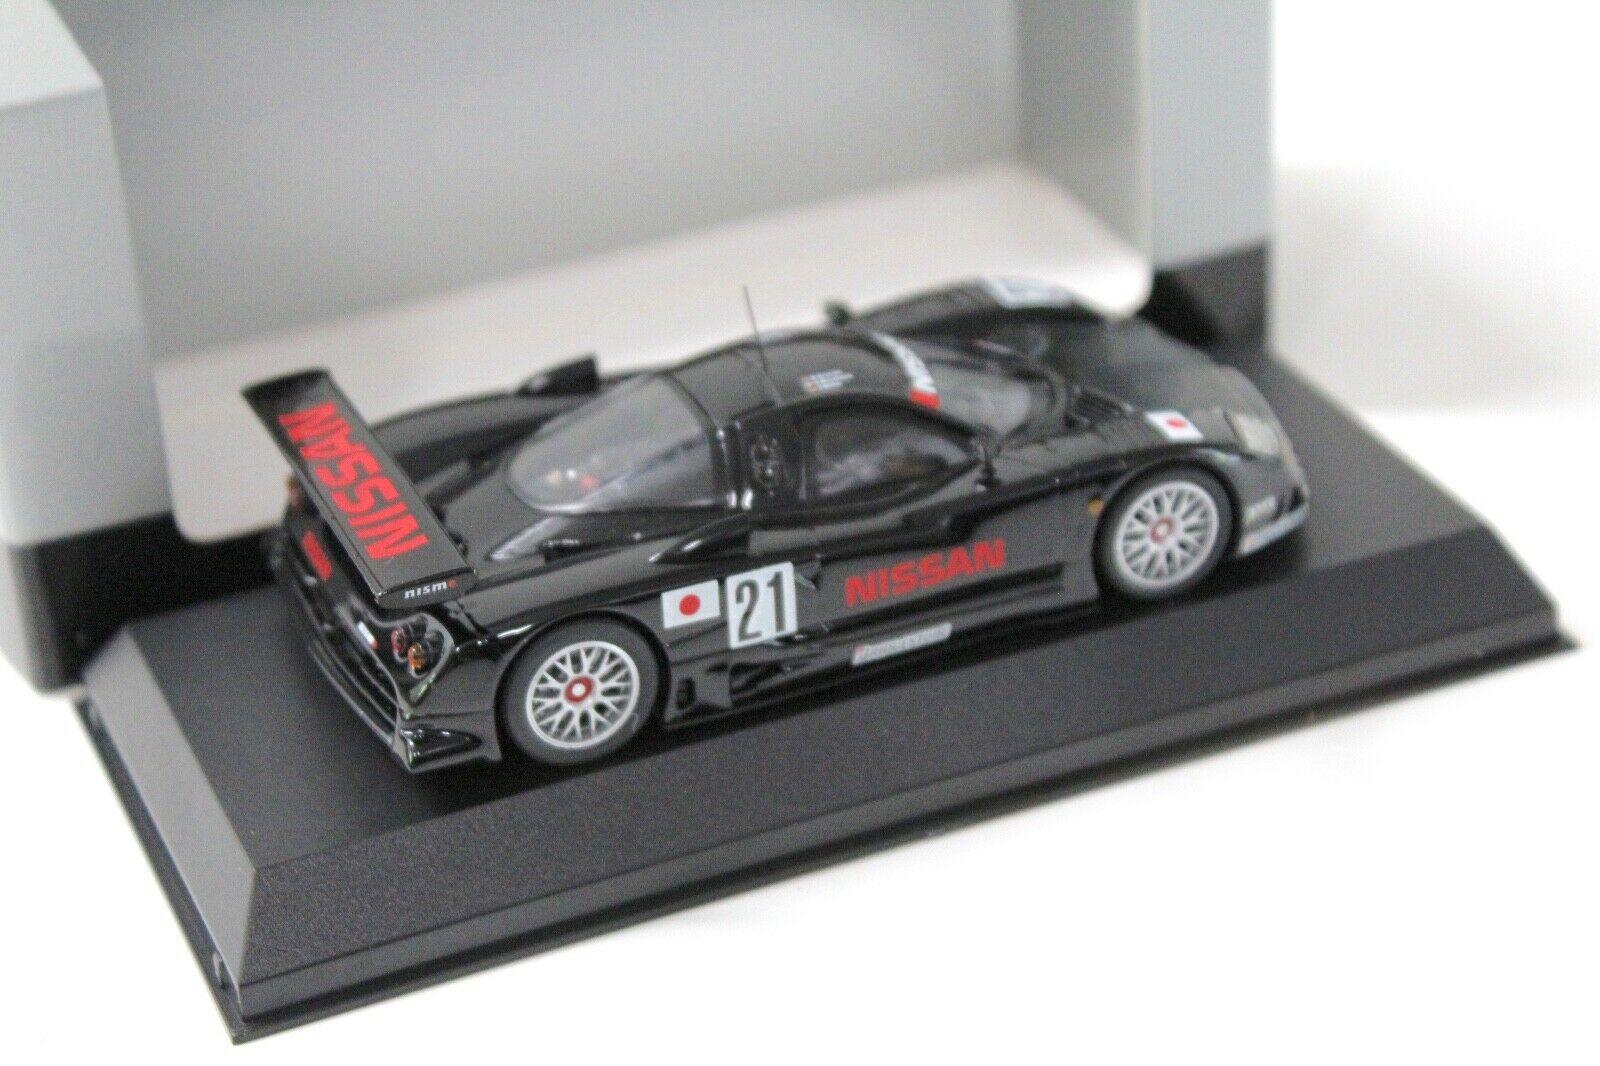 1:43 Kyosho Nissan R390 GT1 1997 24h Le Mans #21 black